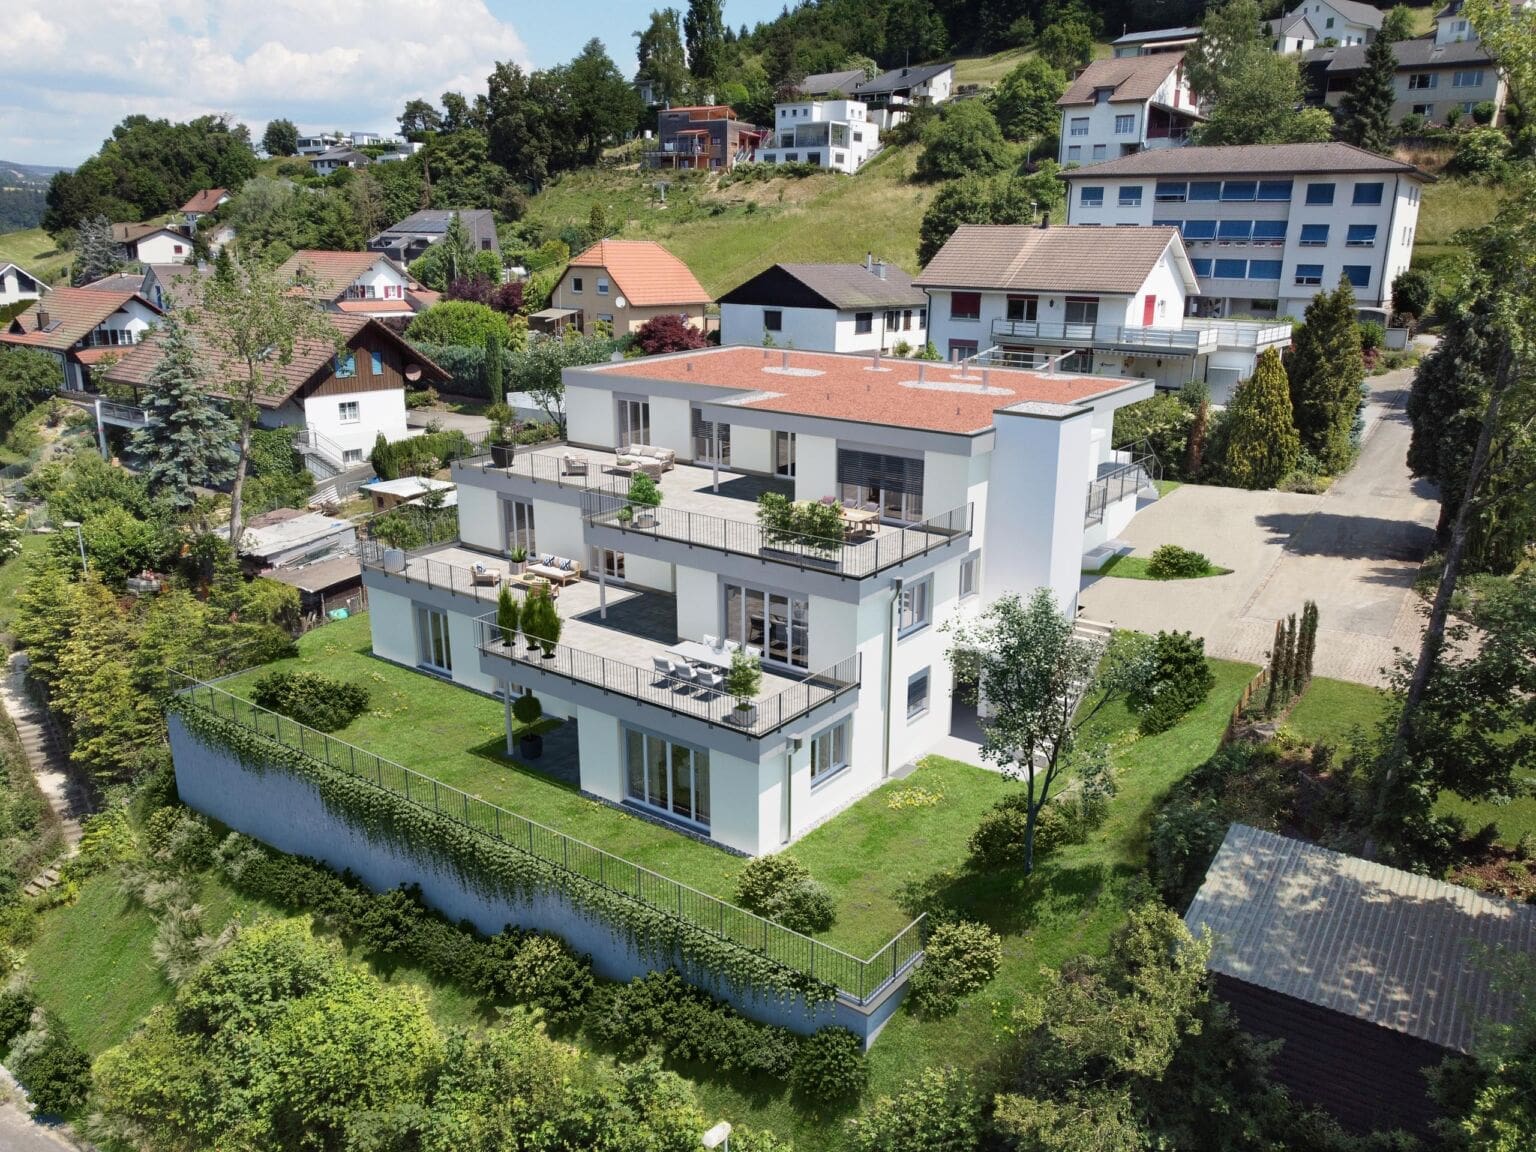 Terrassenhaus Luftbild Visualisierung